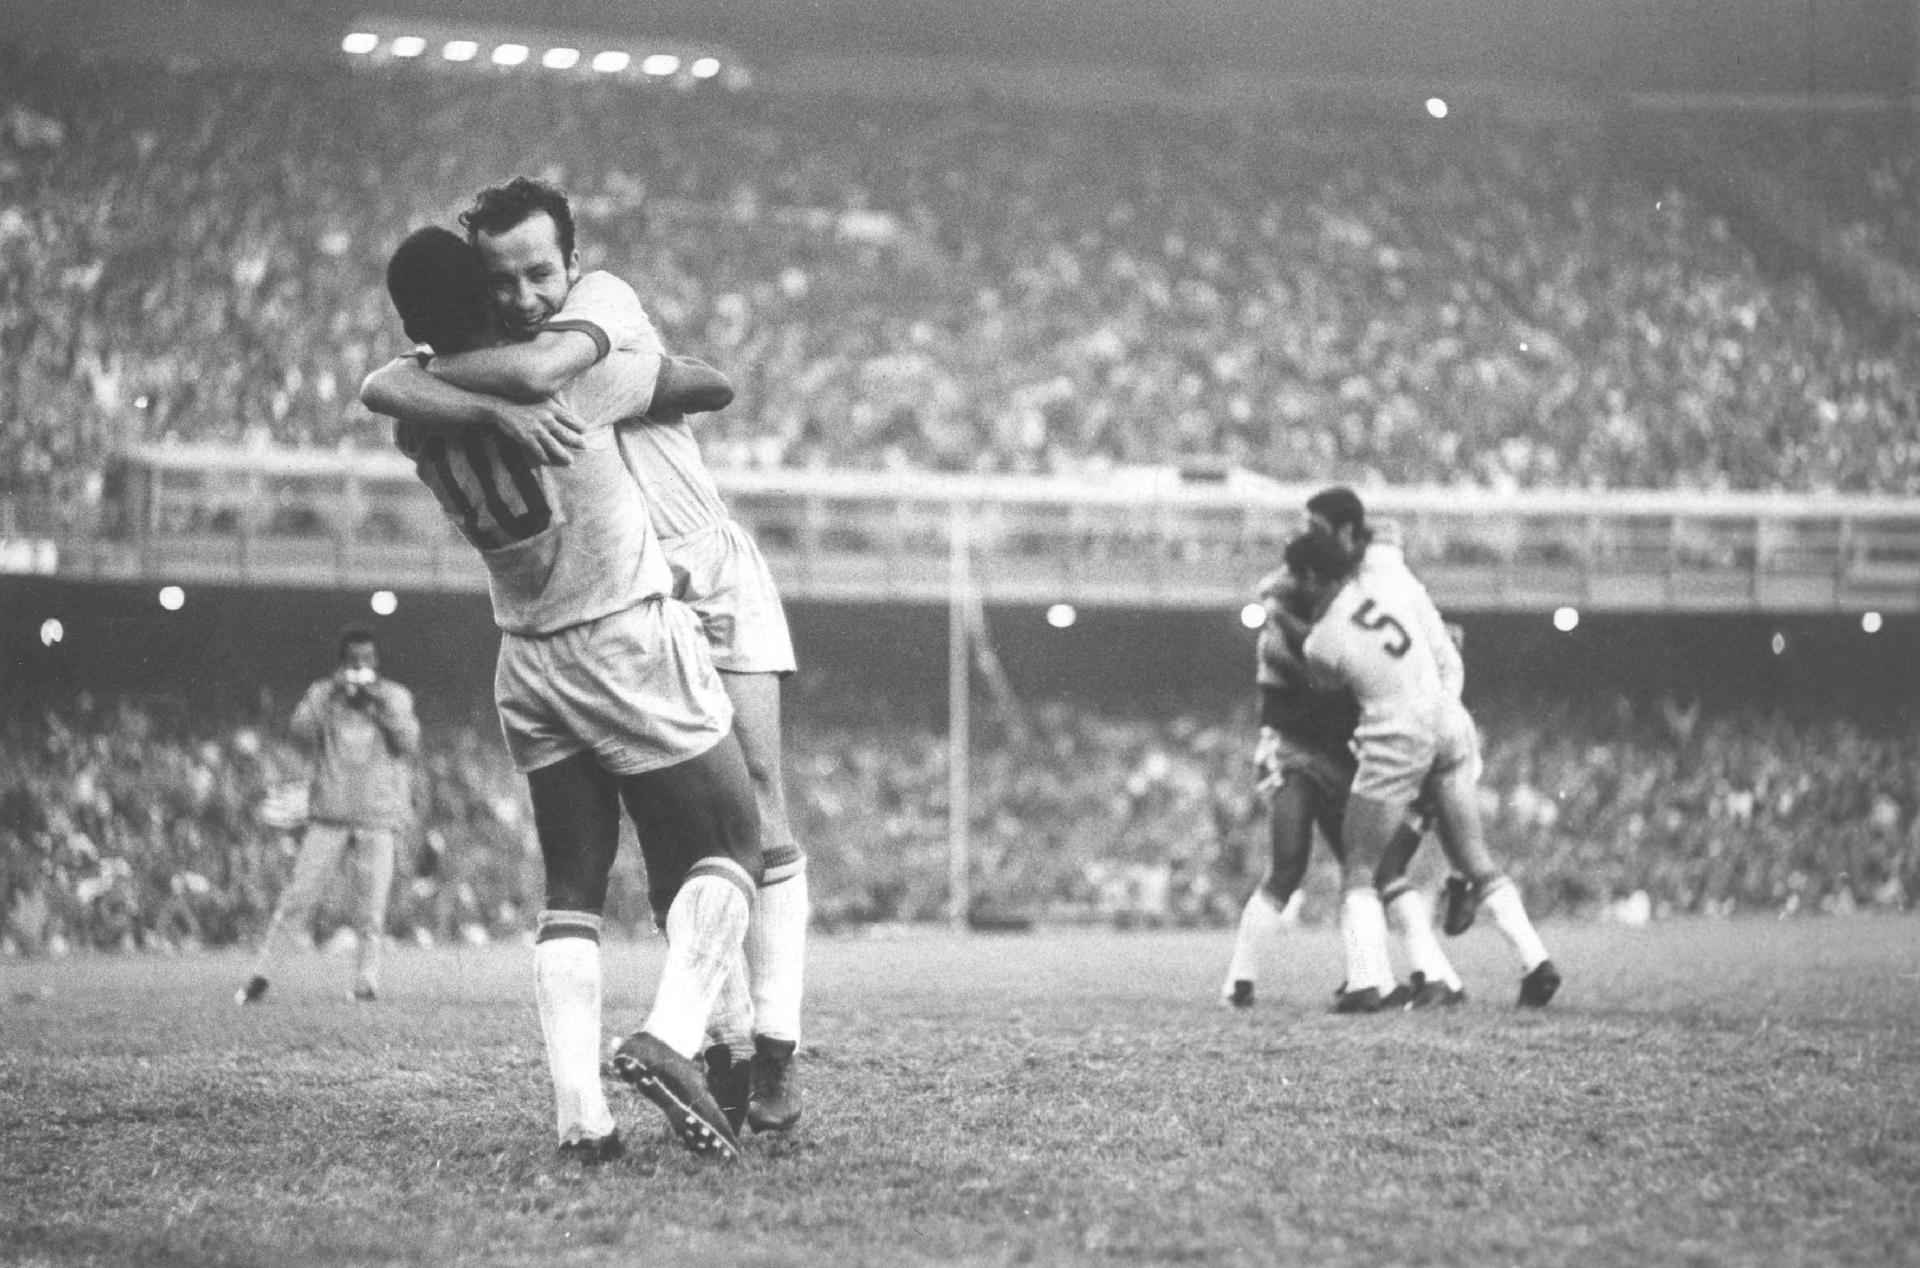 31.ago.1969. Pelé abraça Tostão no Maracanã. Na ocasião, o Brasil venceu o Paraguai por 1 a 0 em partida válidas pelas eliminatórias para a Copa do Mundo de 1970. - Estadão Conteúdo